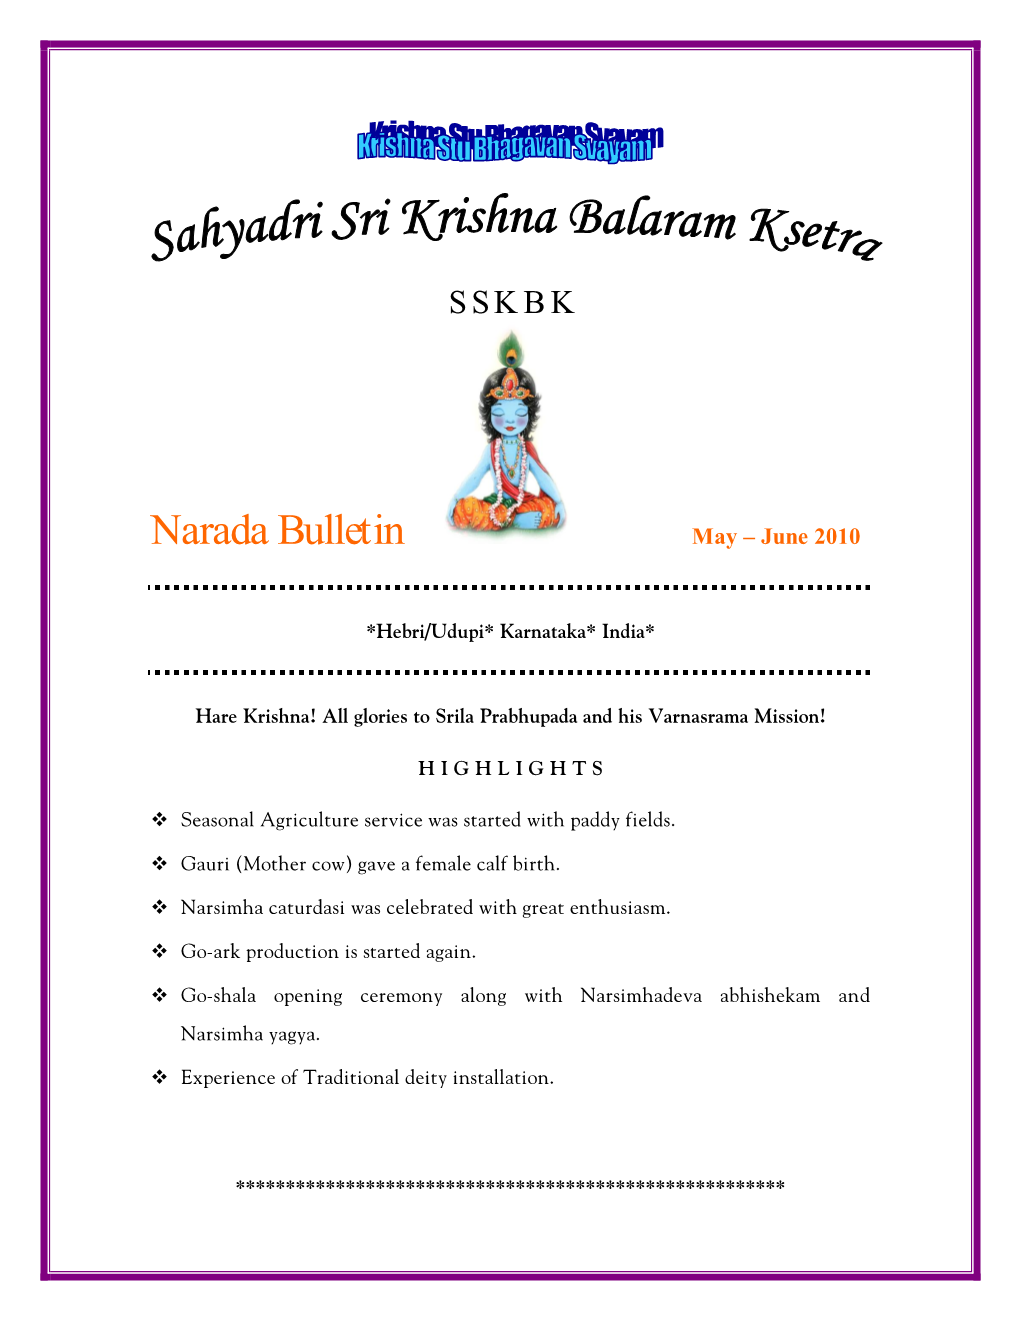 Narada Bulletin May-June 2010